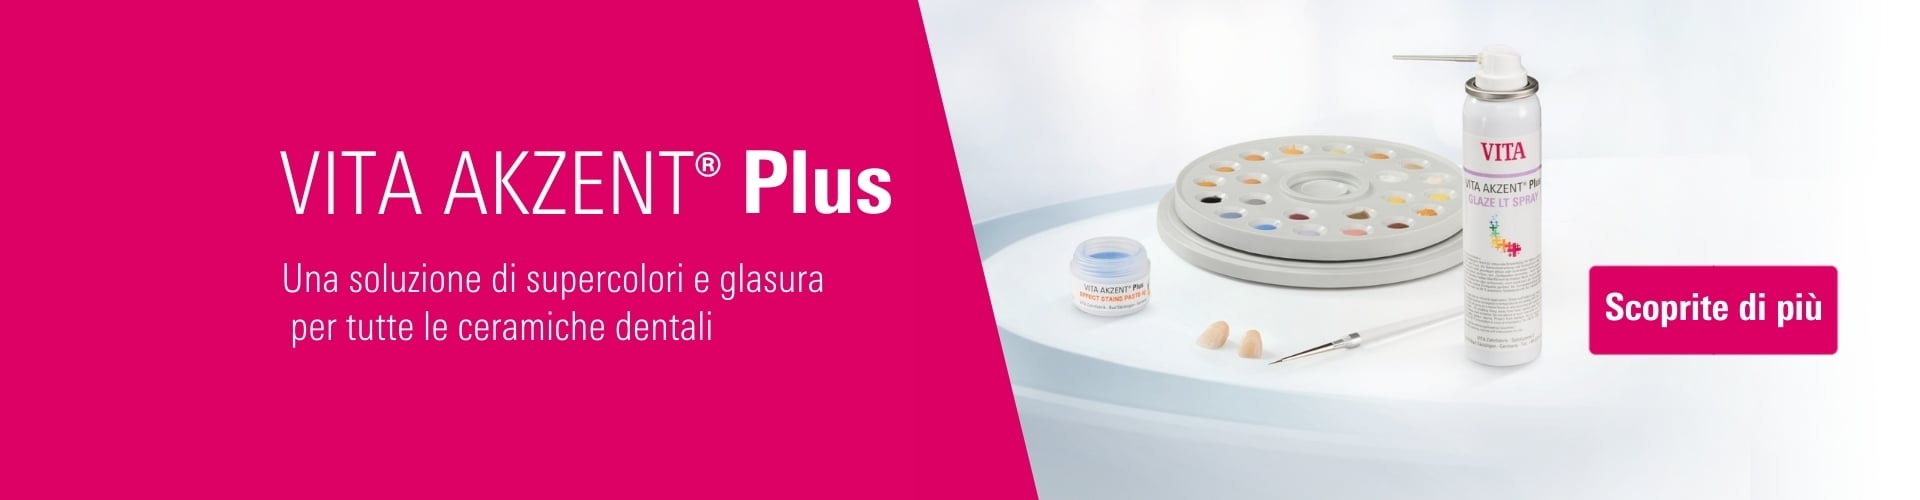 VITA AKZENT Plus - Una soluzione di supercolori e glasura per tutte le ceramiche dentali